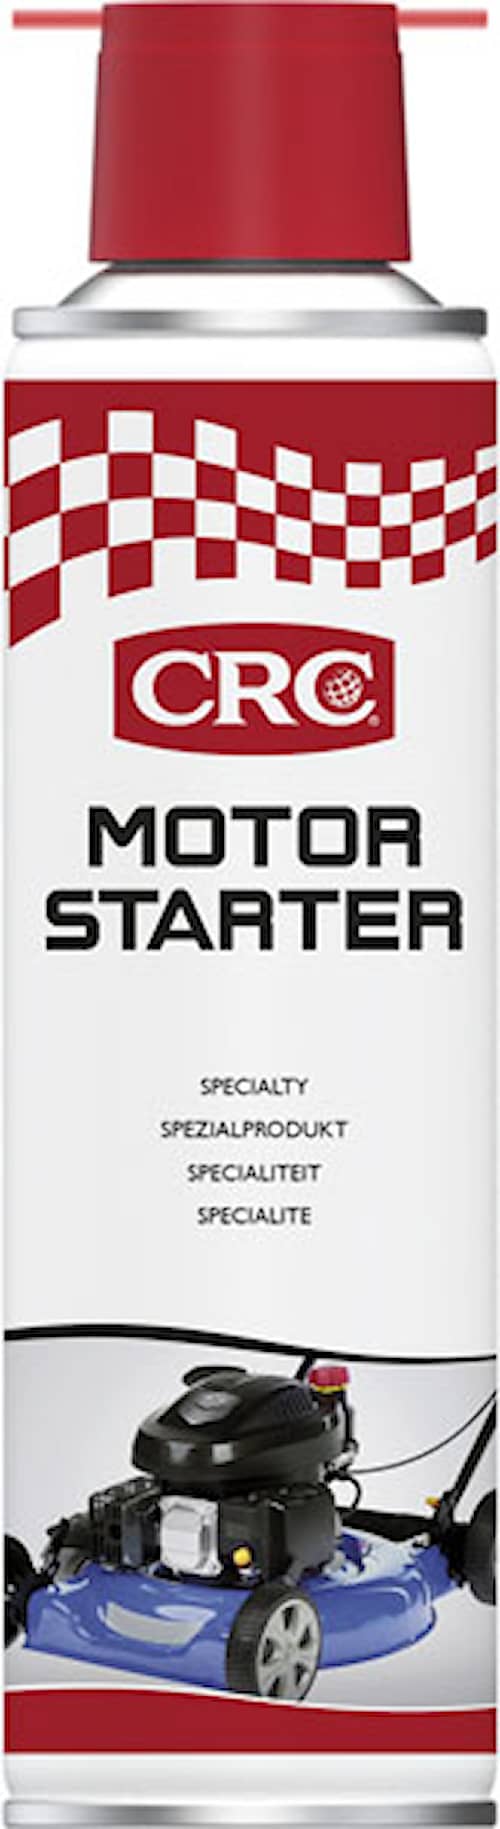 CRC Startgas Motor starter Spray 250ml